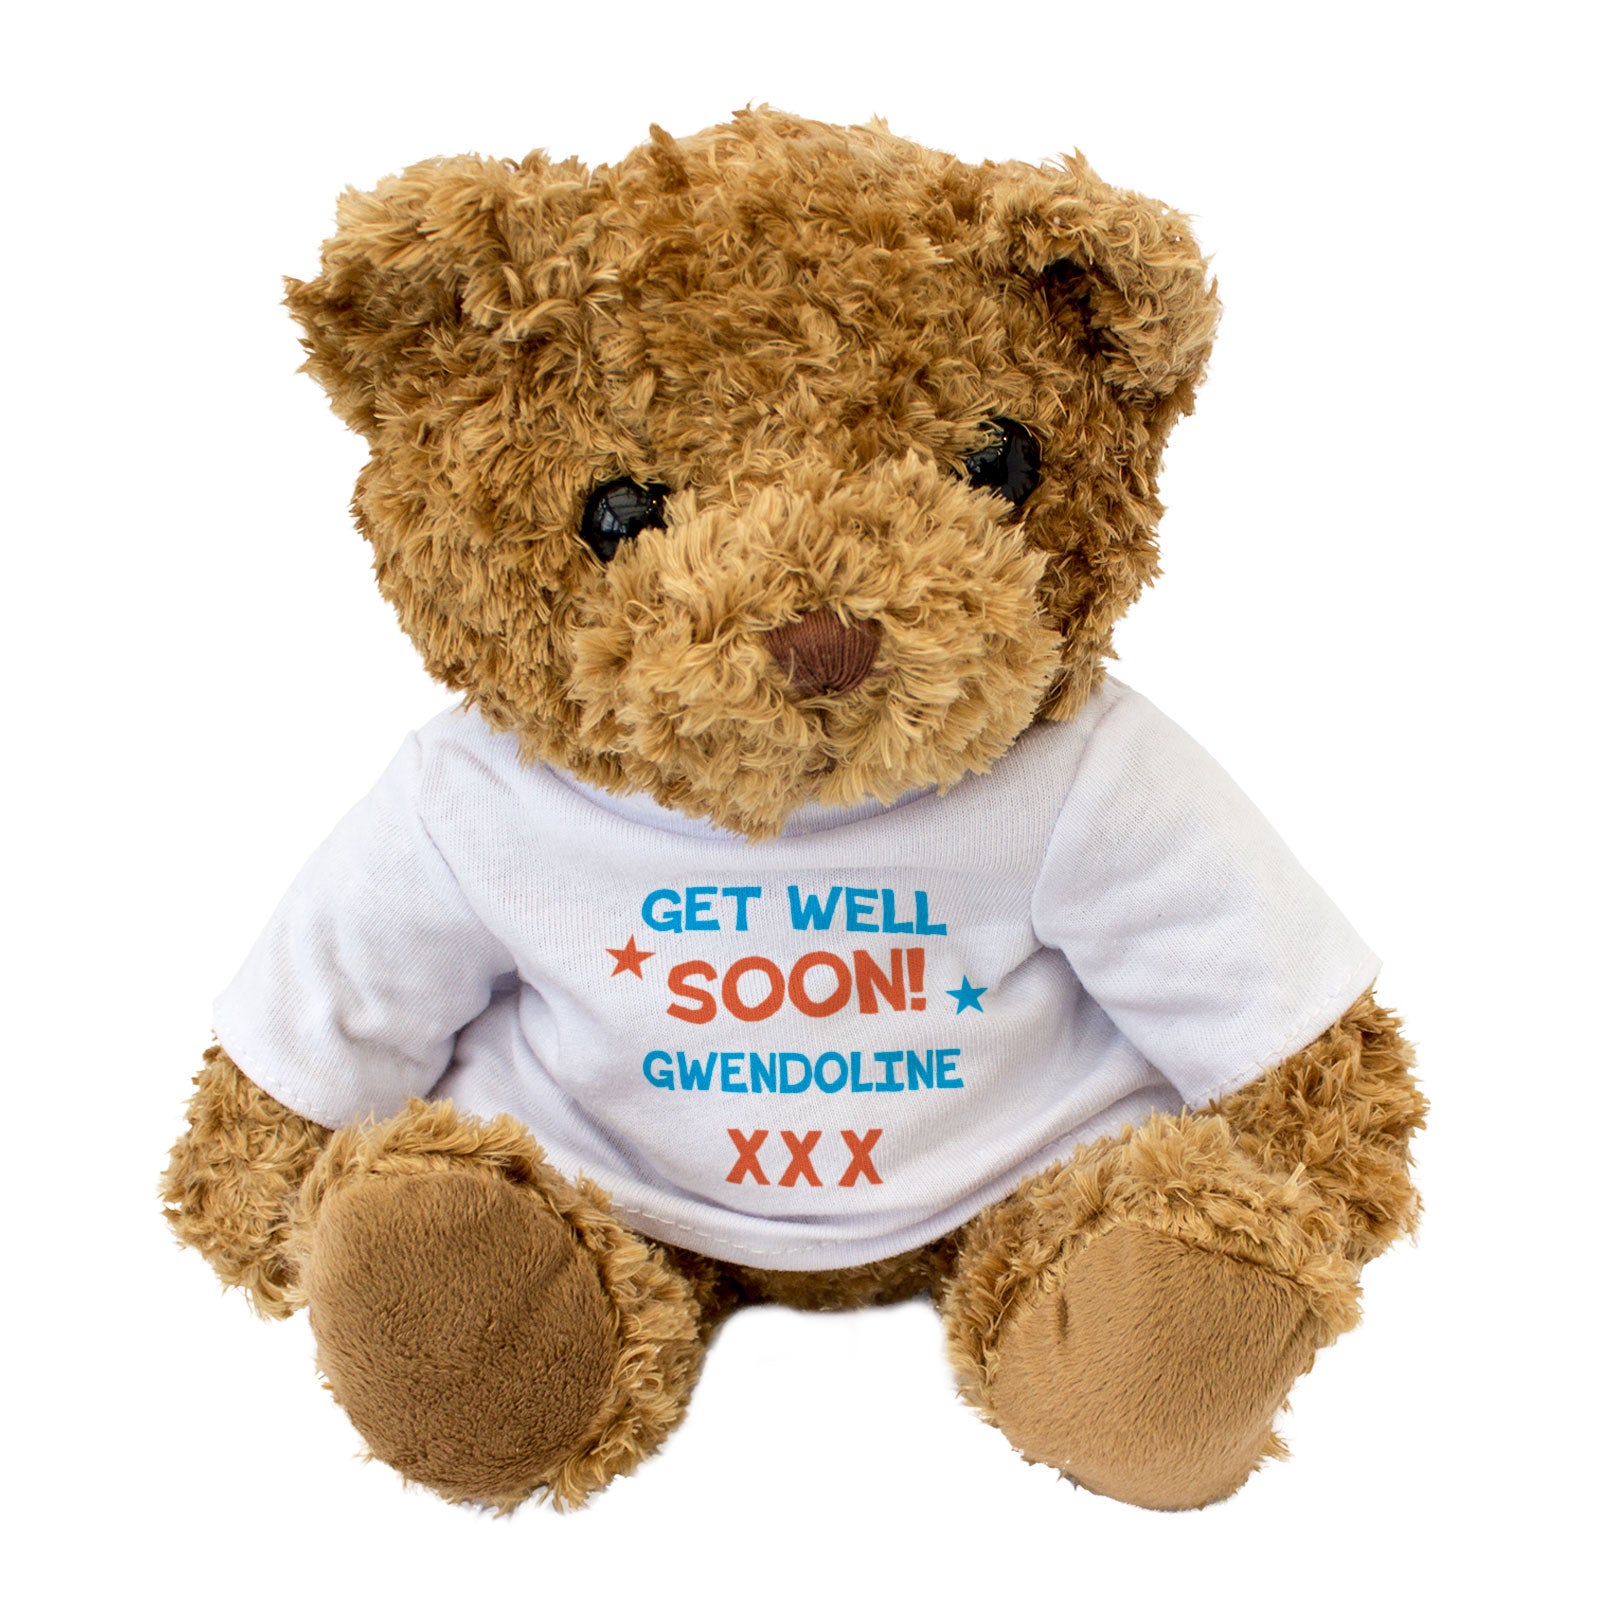 Get Well Soon Gwendoline - Teddy Bear